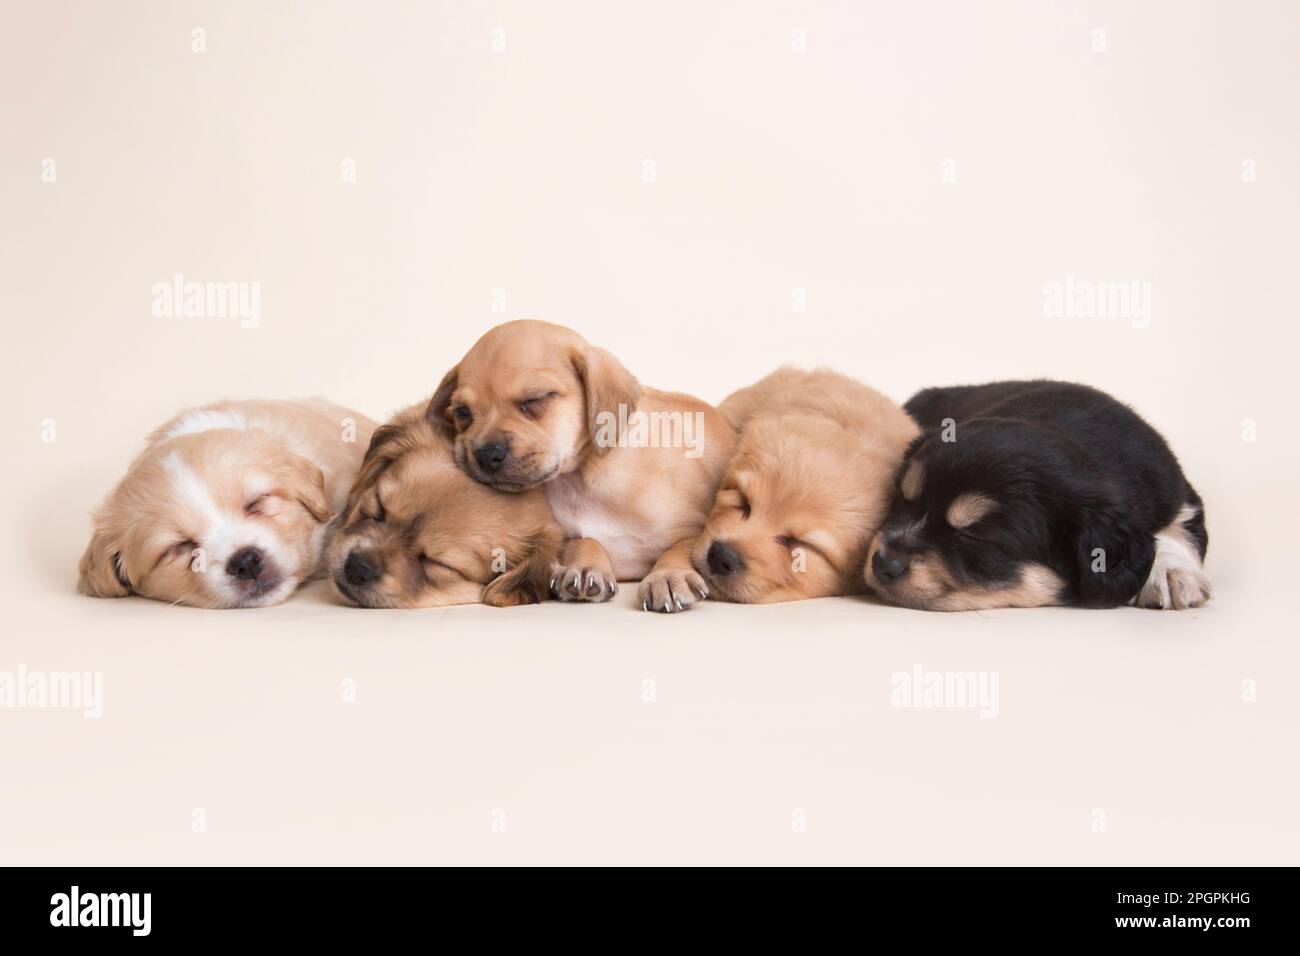 cachorros de perros peruanos de raza mixta Foto de stock